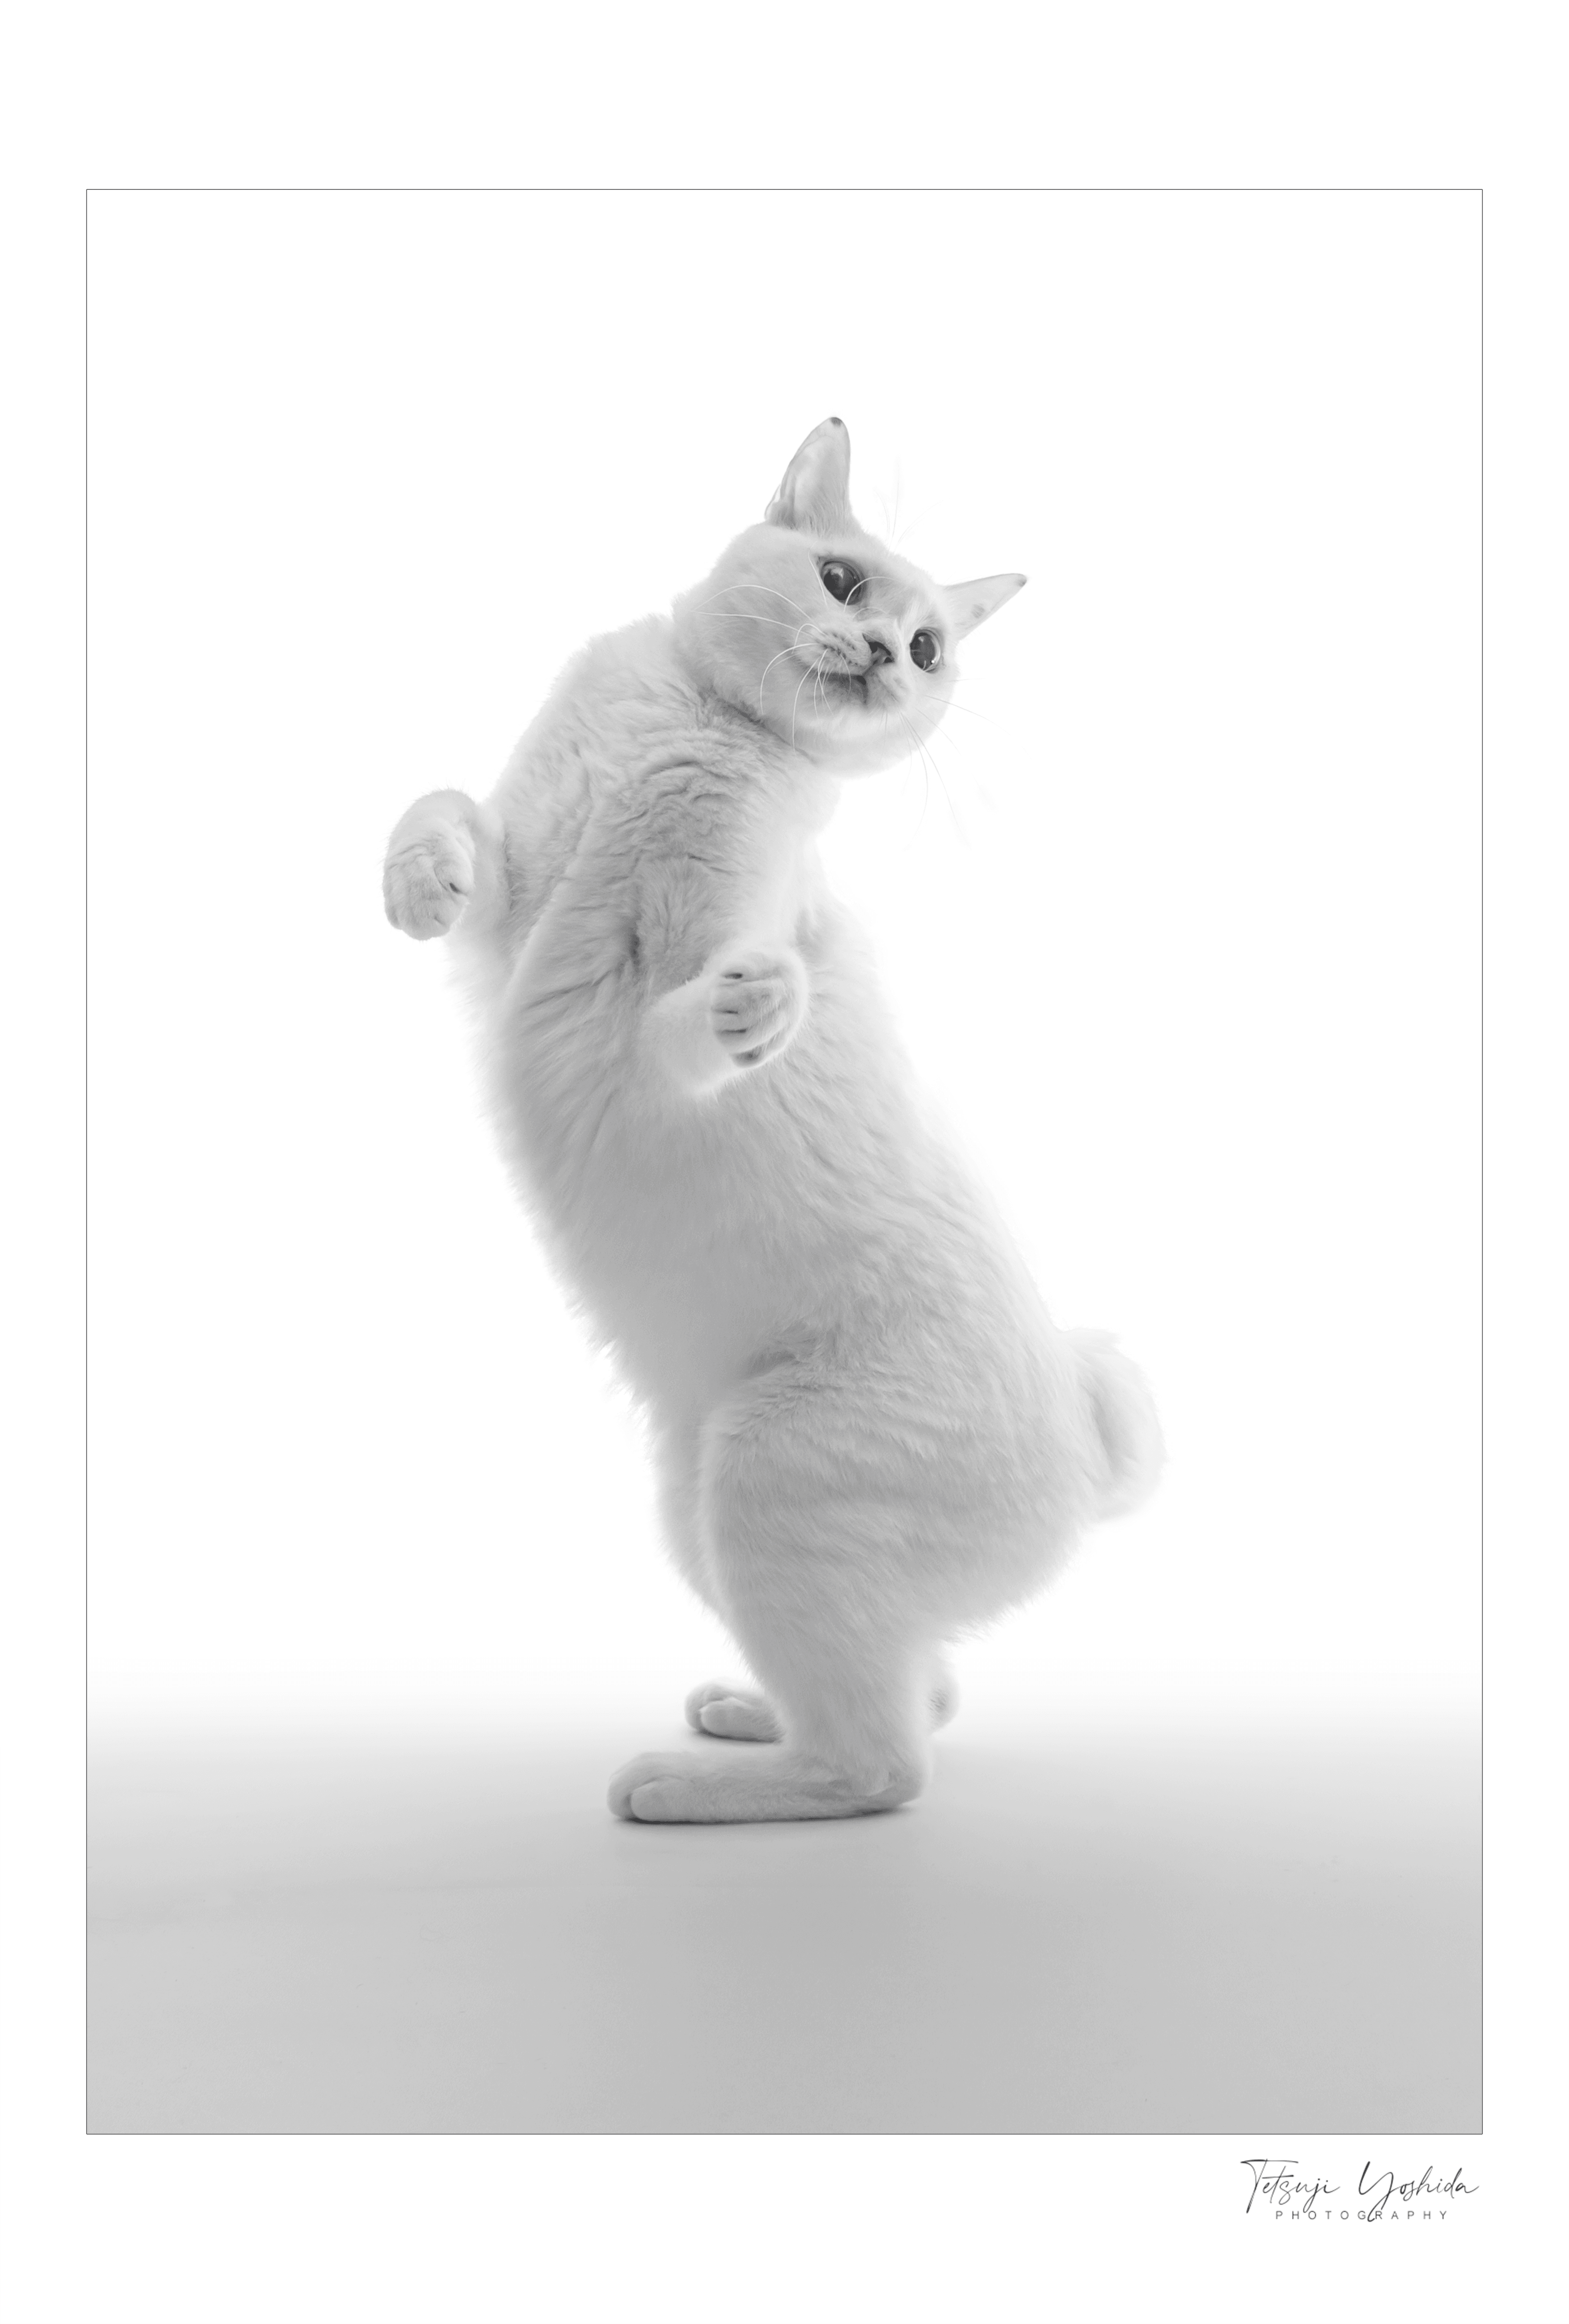 Teto the white cat "Dancing #2"